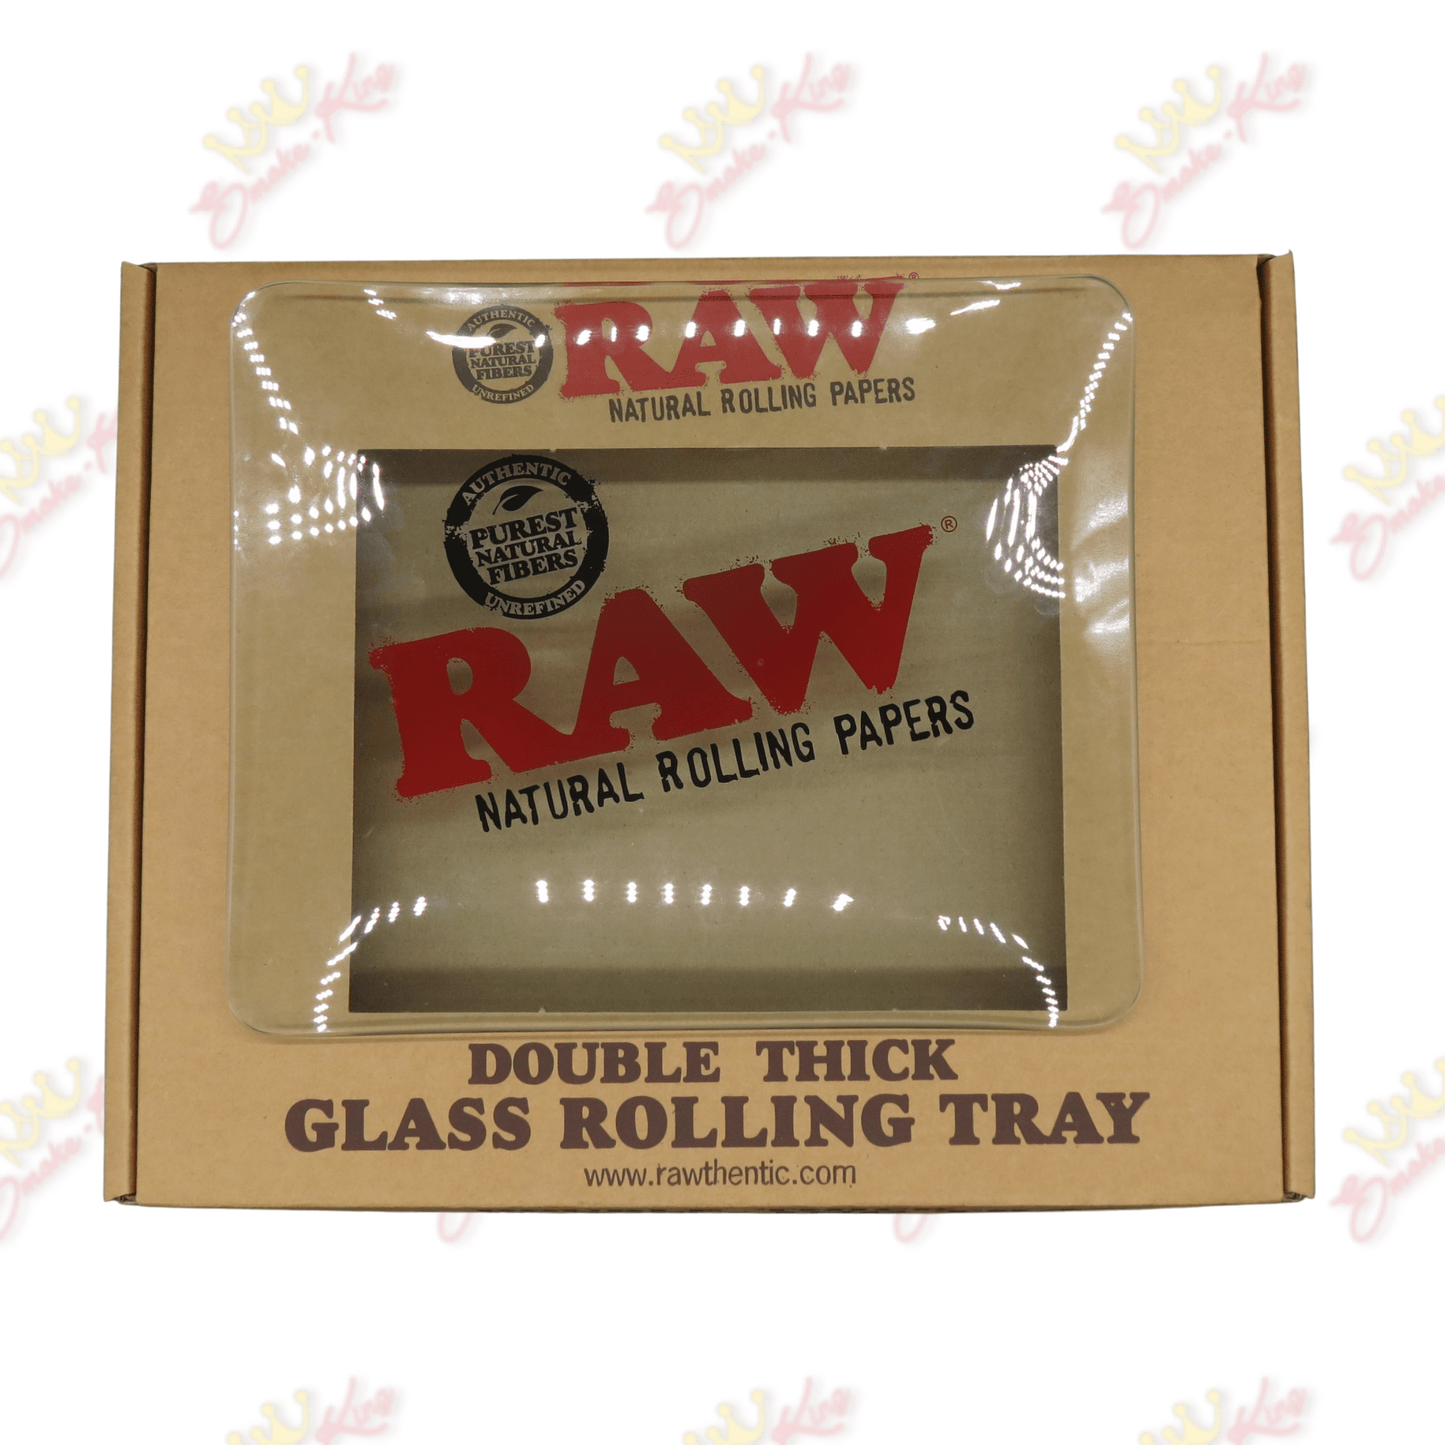 Smokeking rolling-trays RAW Glass Rolling Tray